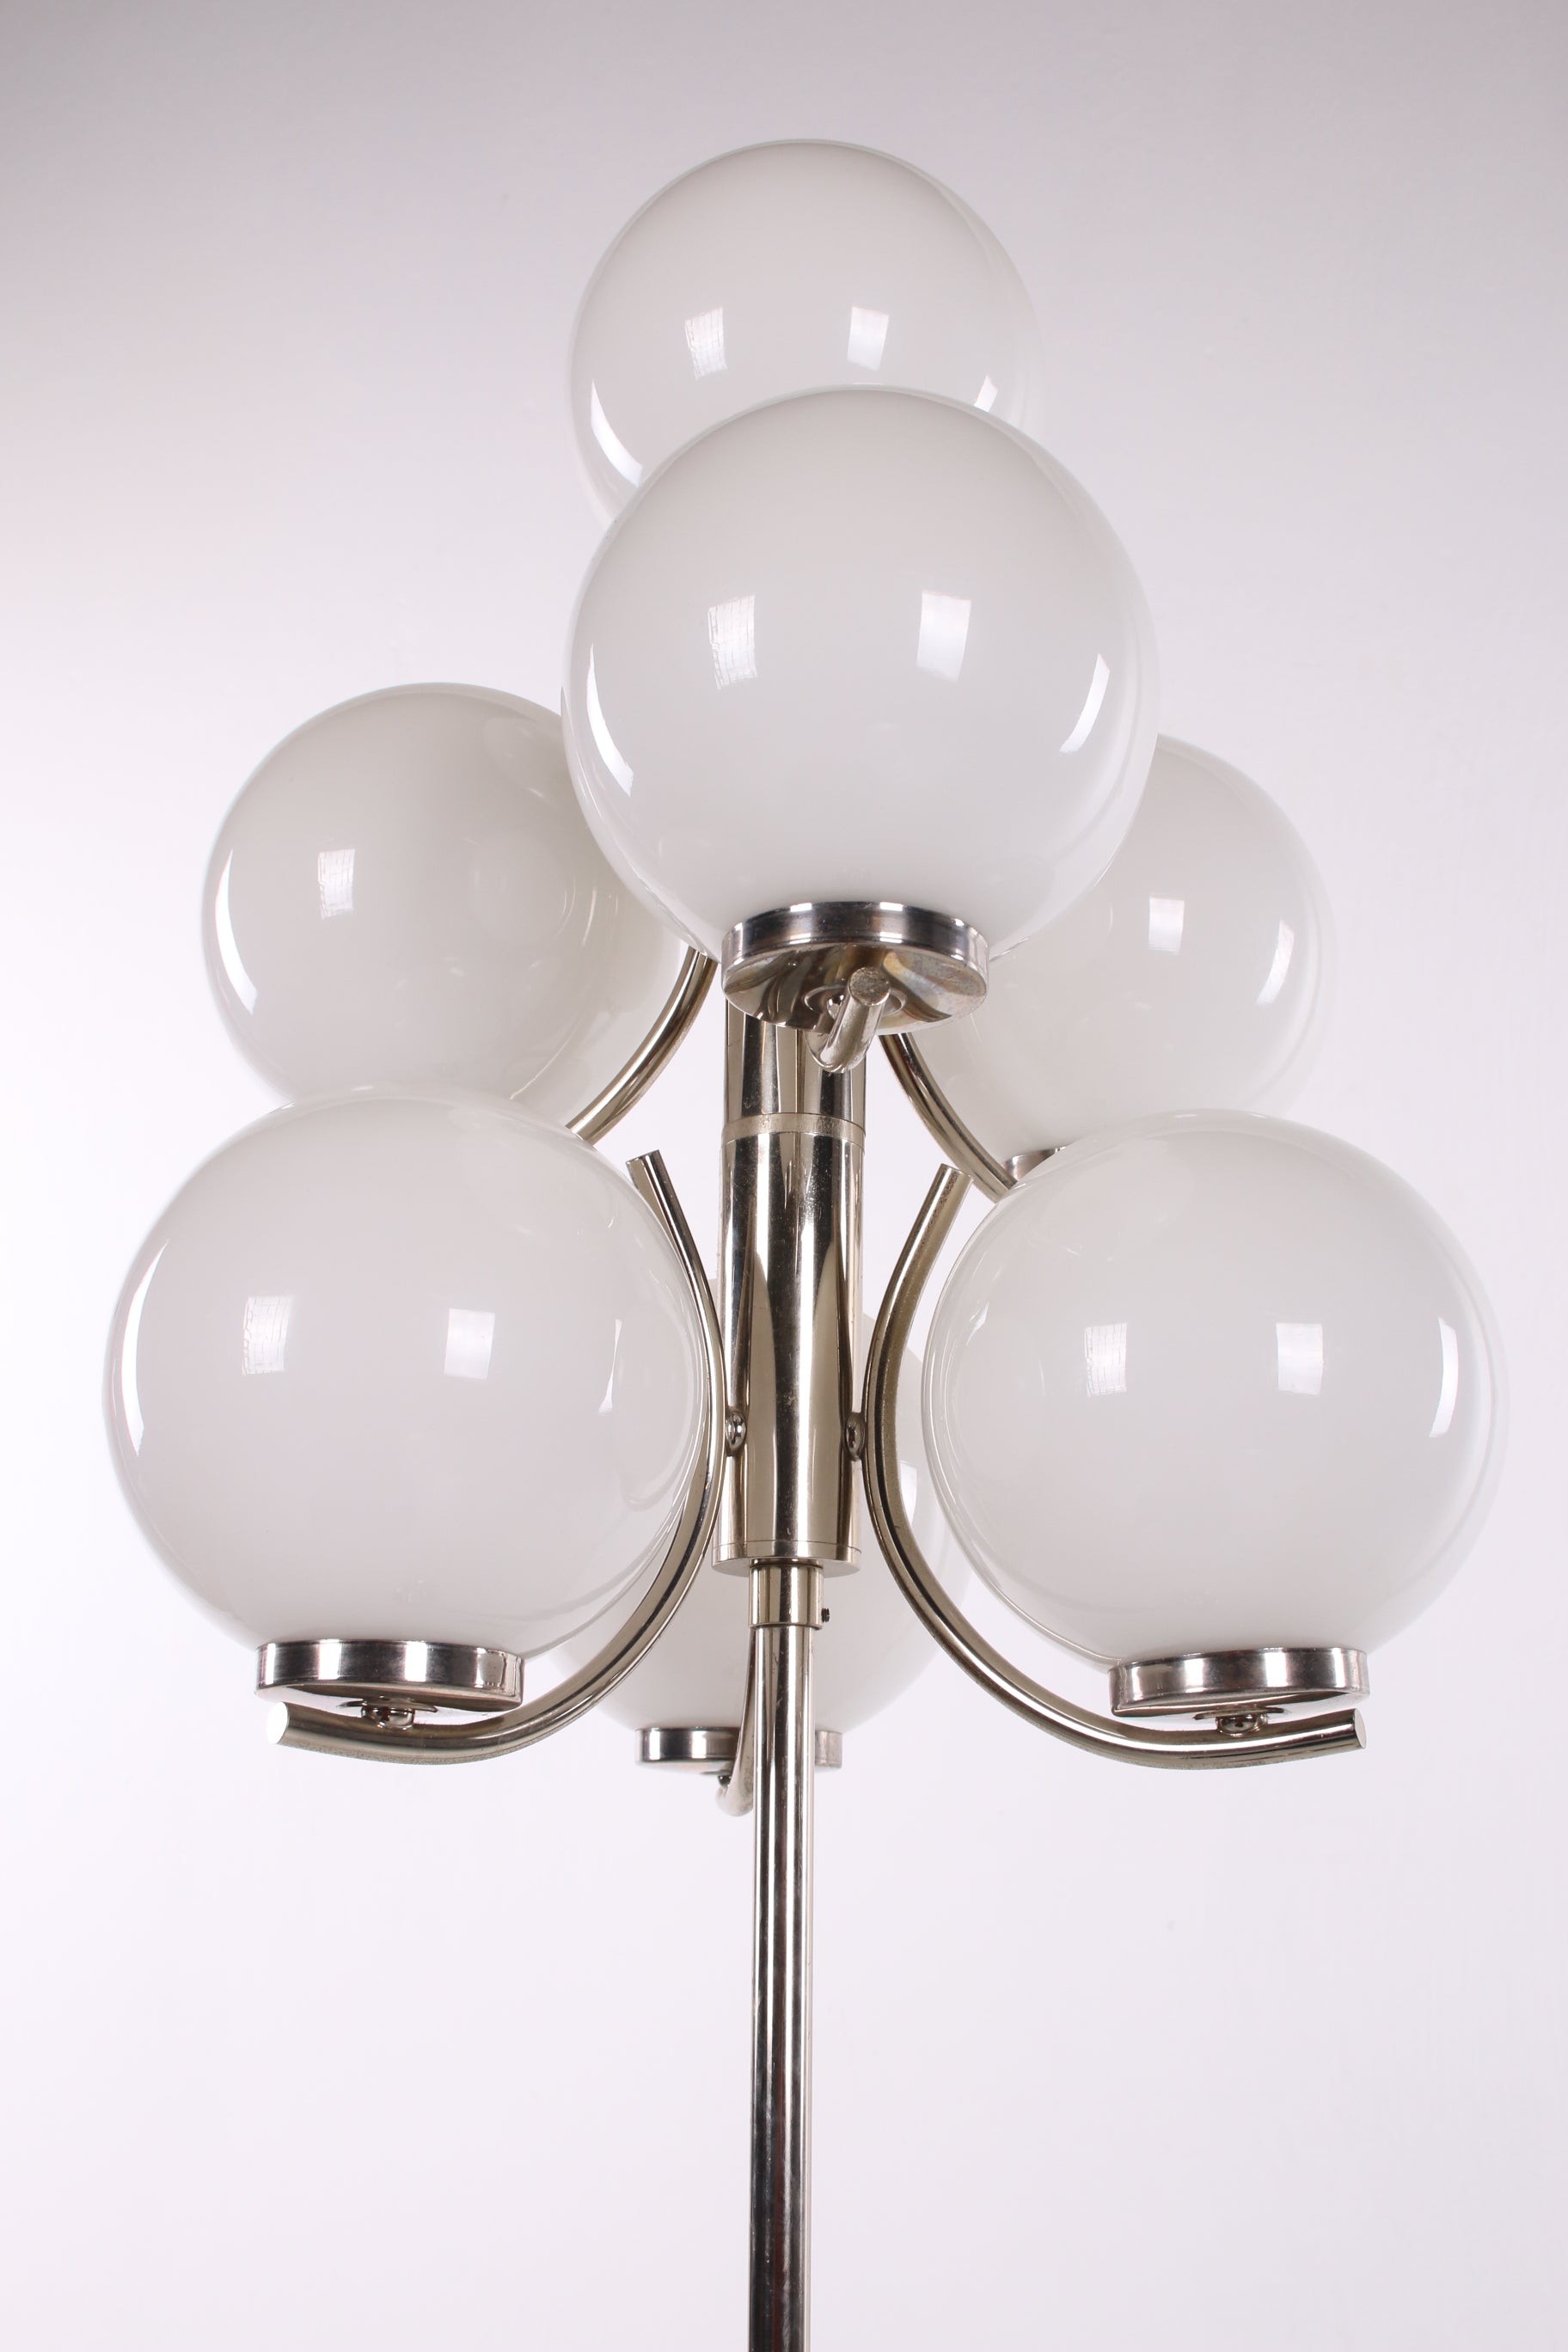 Vloerlamp chrome met 7 Witte glazenbollen detail glazen bollen